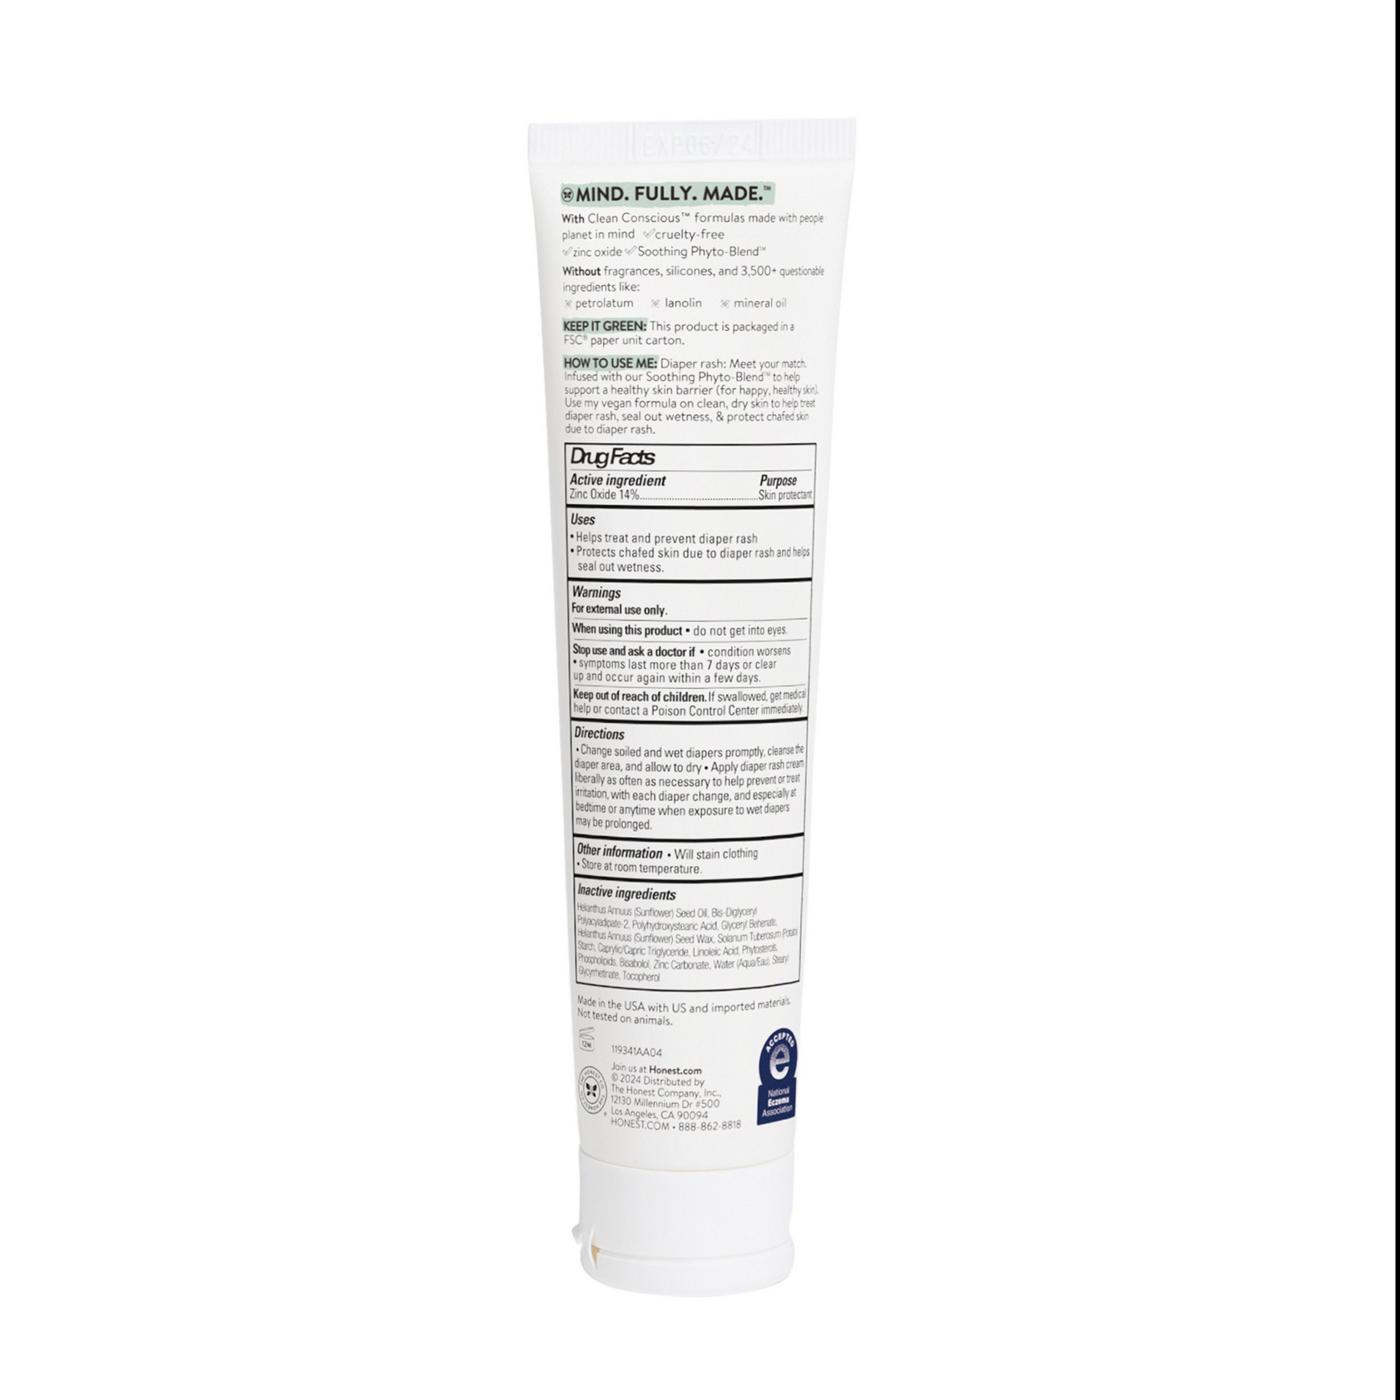 The Honest Company Zinc Oxide Diaper Rash Cream; image 2 of 4